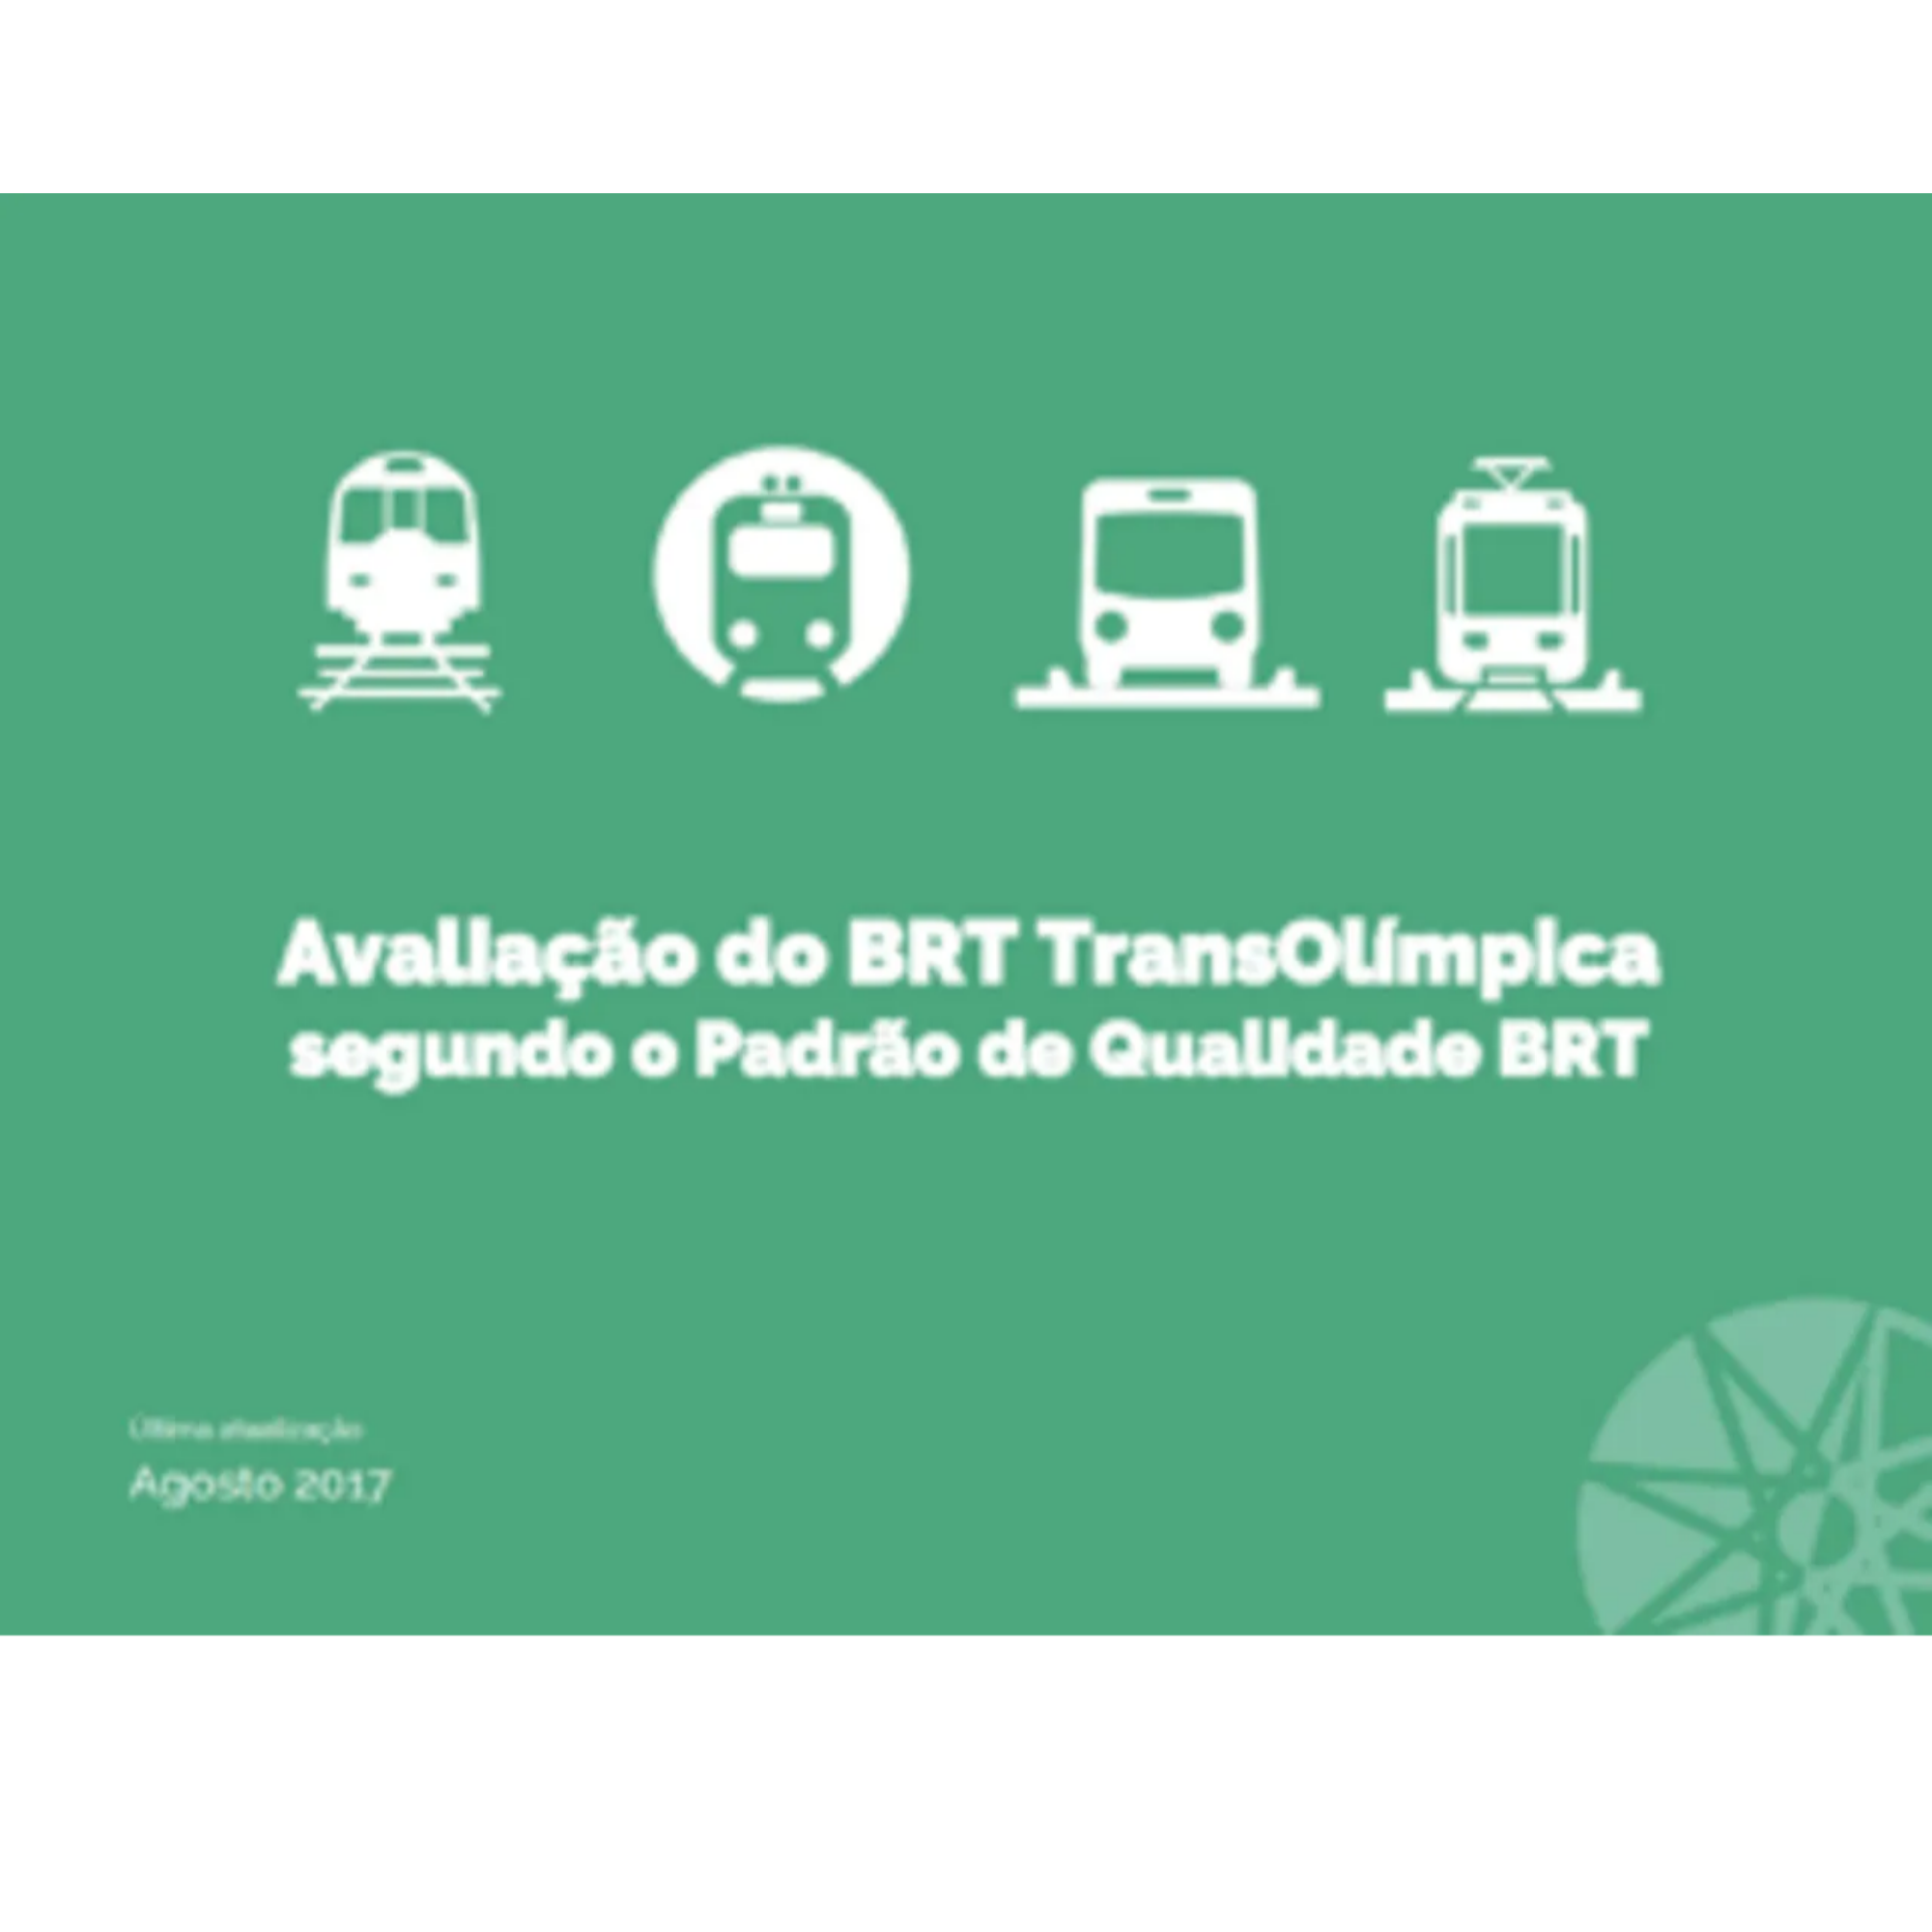 Corredor de BRT TransOlímpica – Rio de Janeiro: avaliação de resultados e recomendações de melhorias